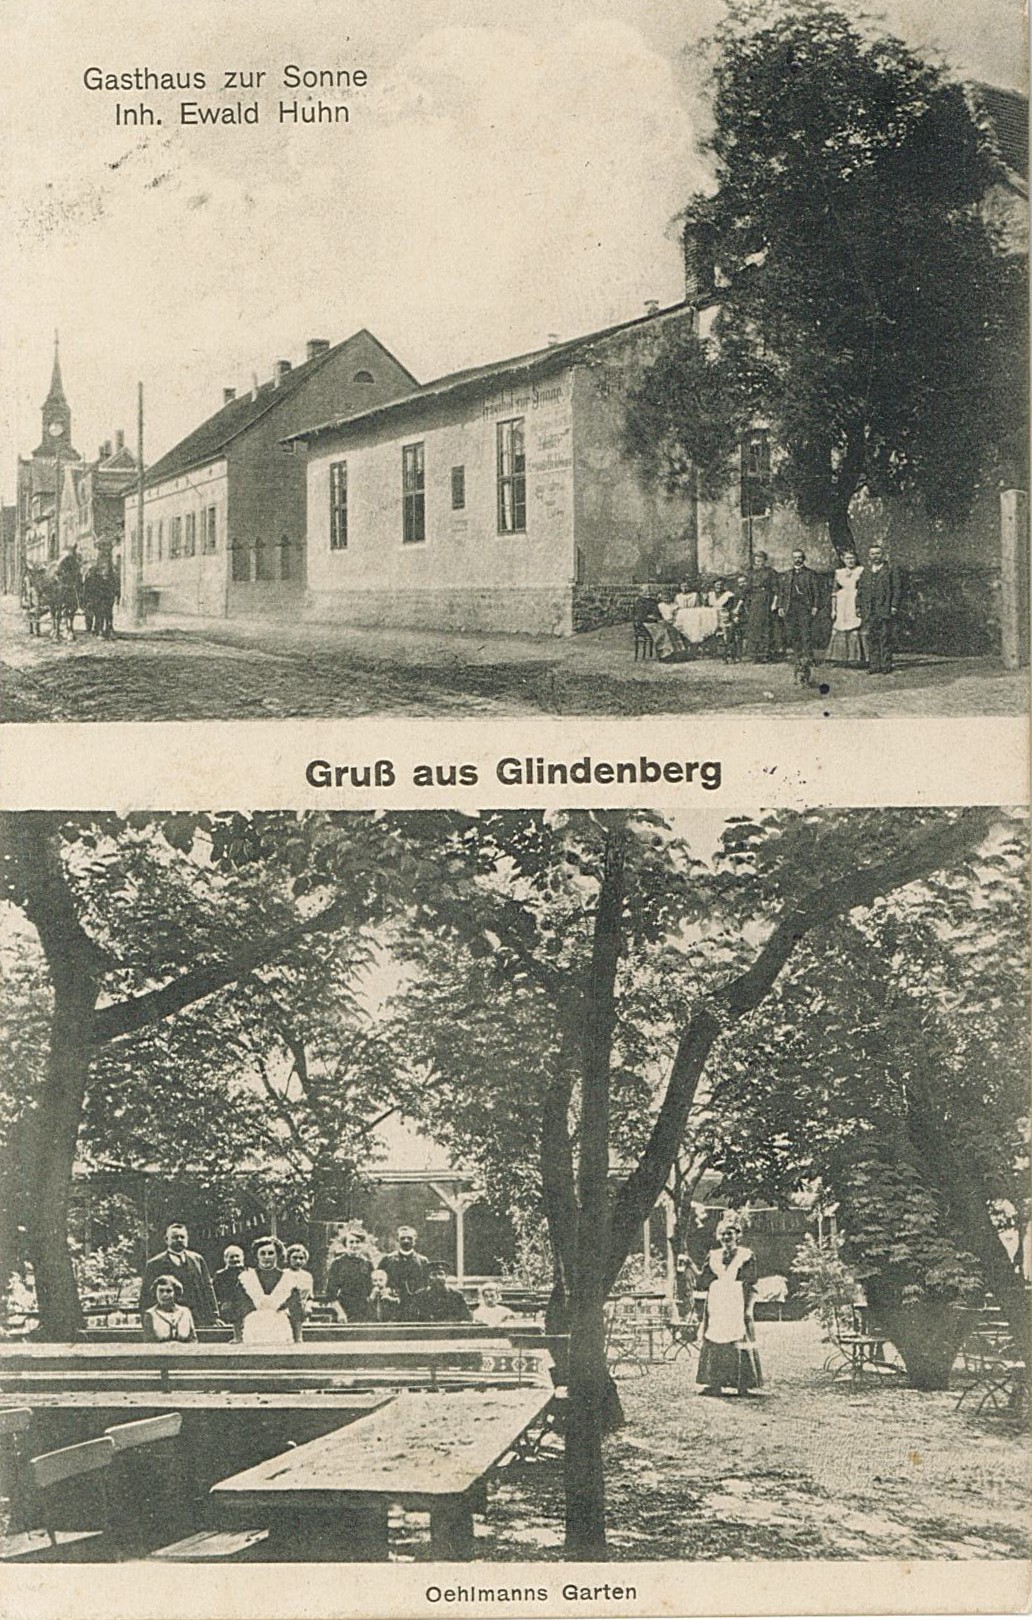 Postkarte "Gruß aus Glindenberg", 13.06.1915 (Museum Wolmirstedt RR-F)